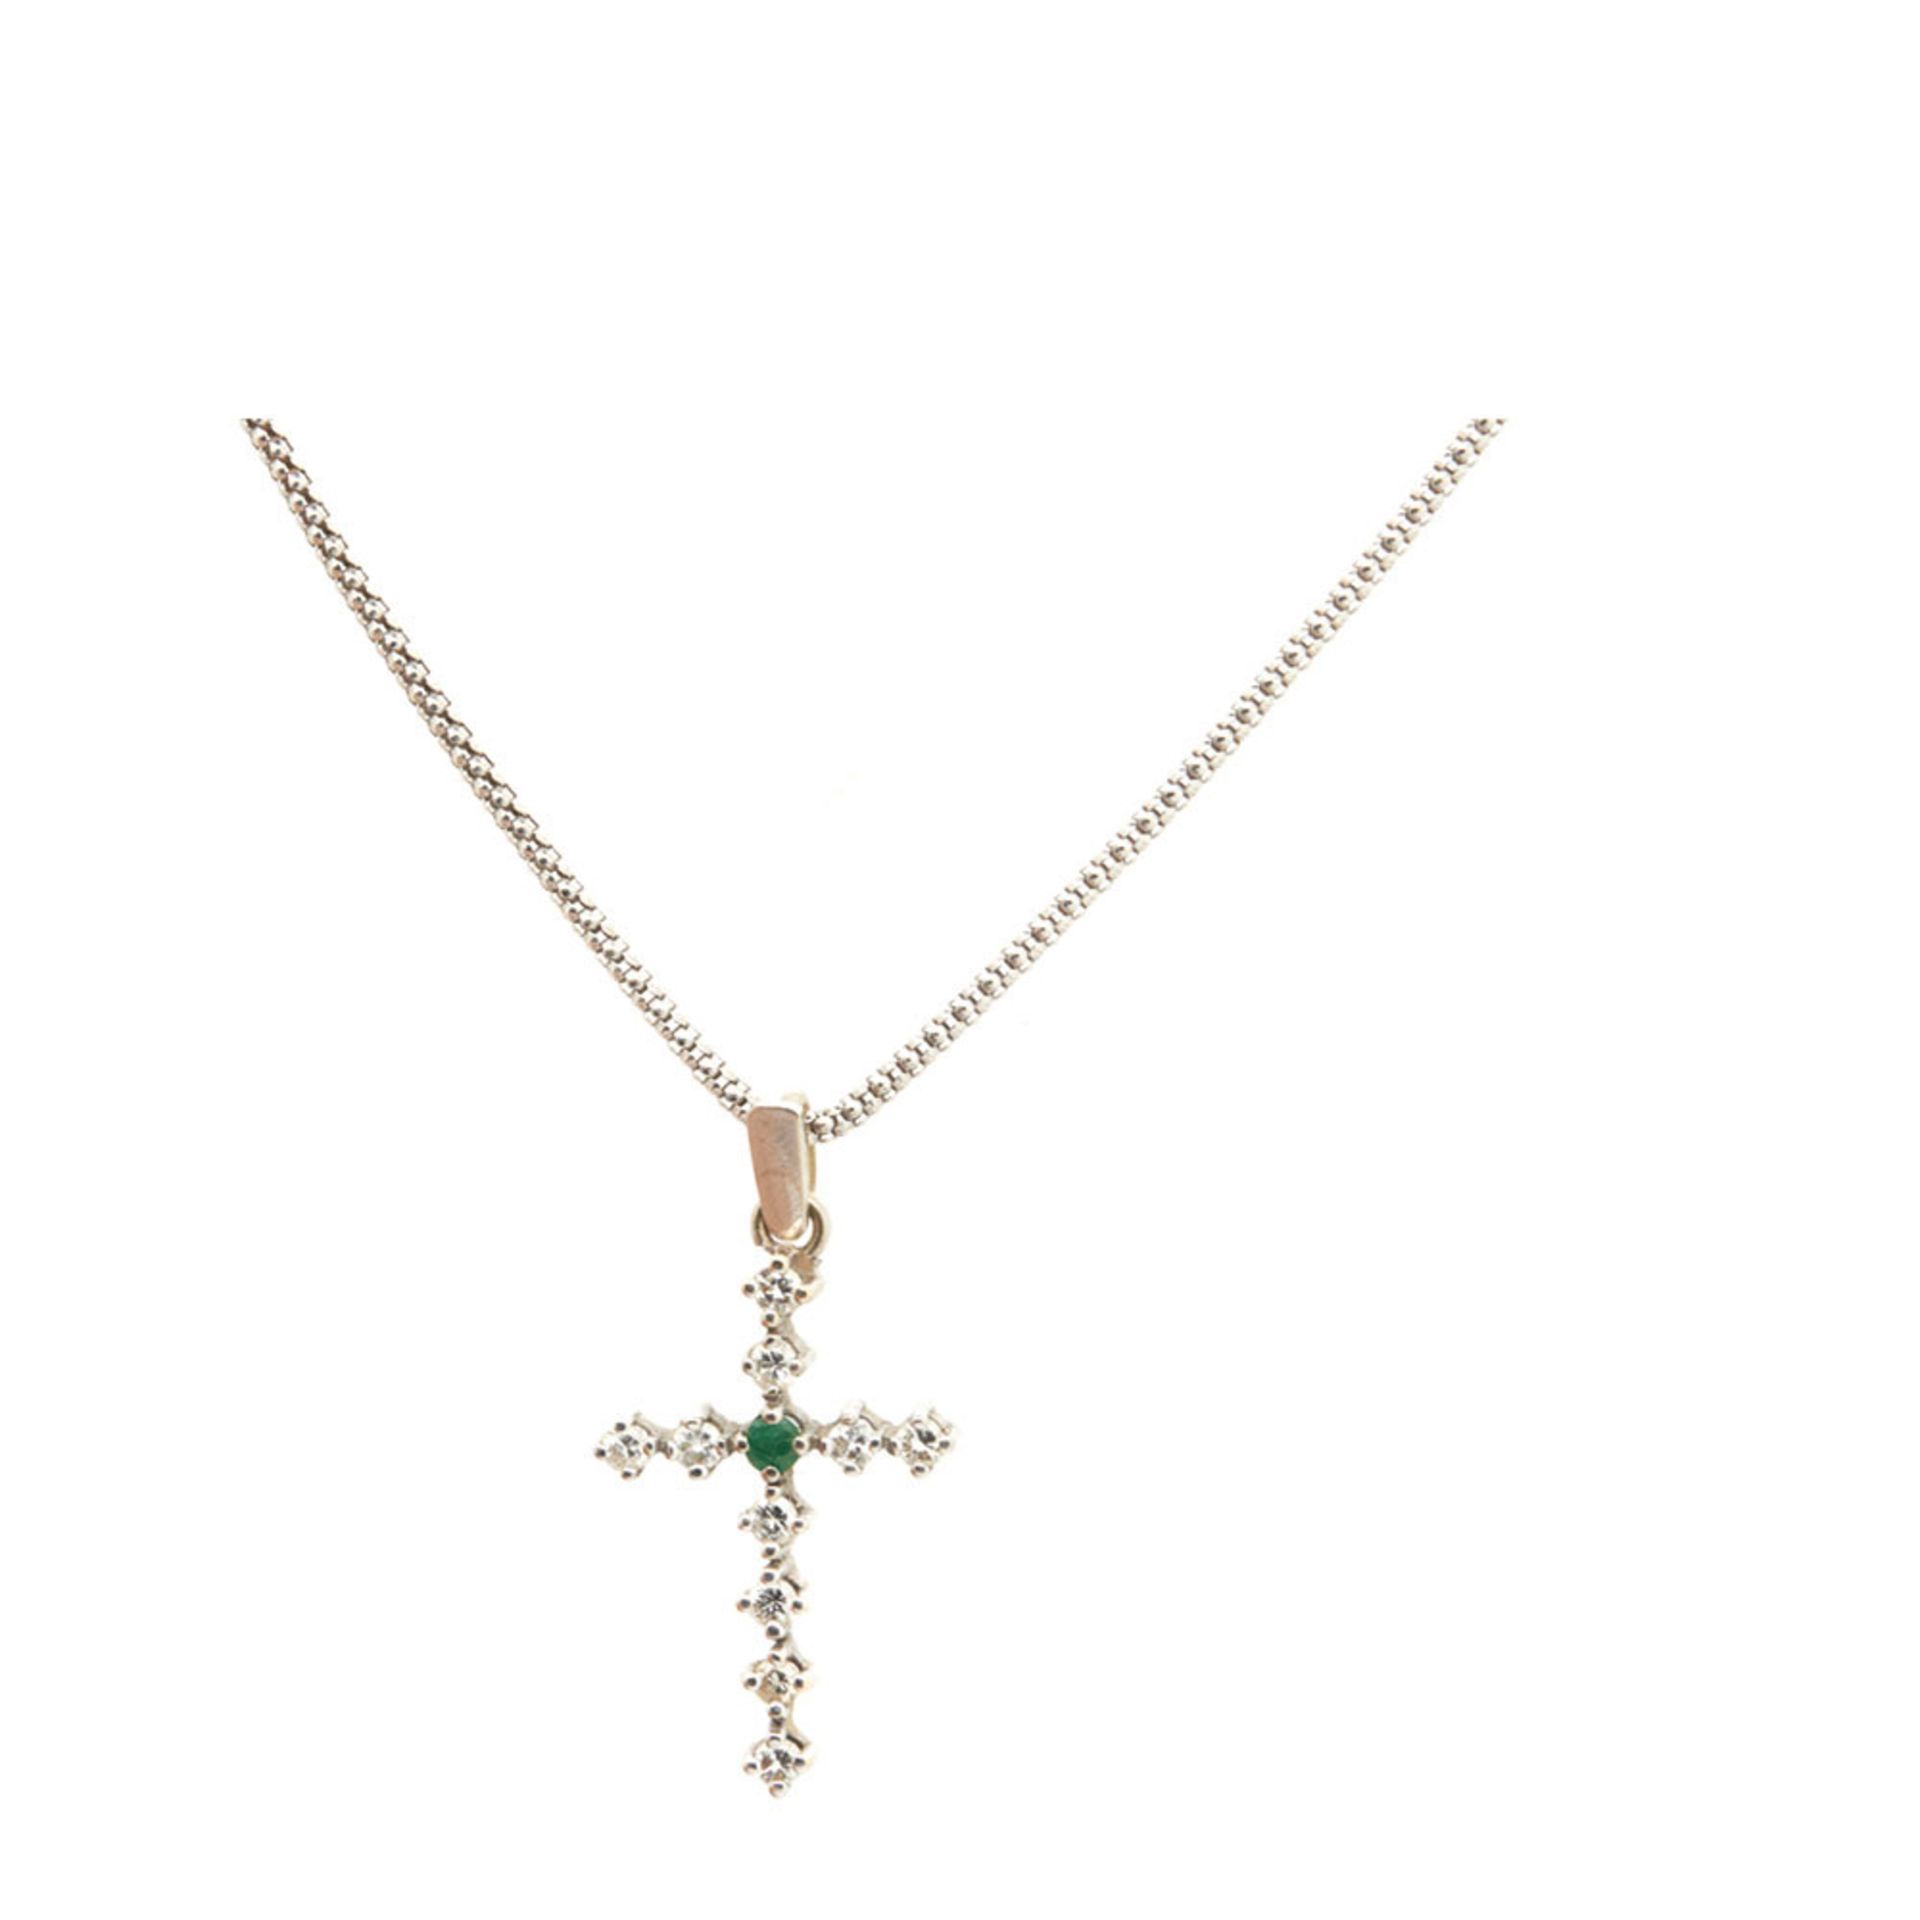 White gold, diamonds and emerald cross pendantColgante cruz en oro blanco con brillantes y esmeralda